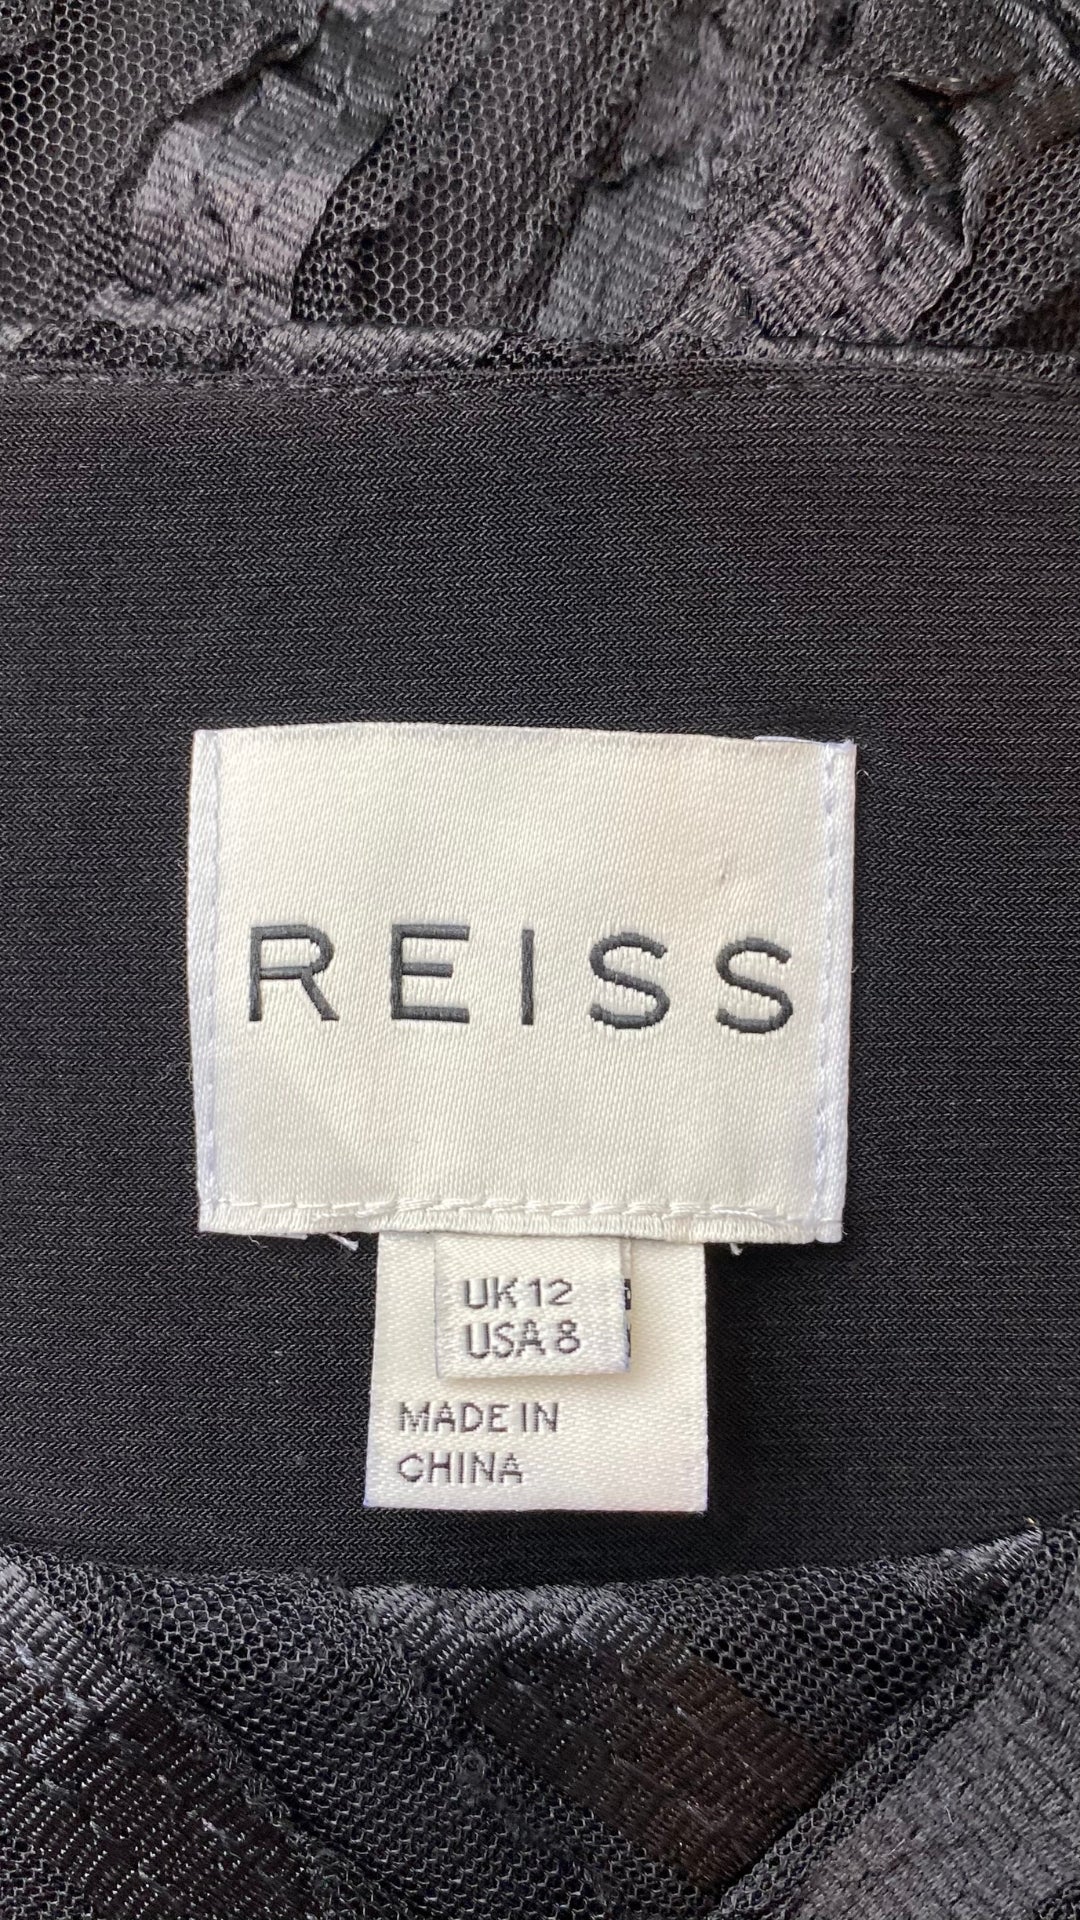 Robe sublime noire en transparence et effet de rayures créées par des juxtaposition de tissus. Vue de l'étiquette de marque et taille.